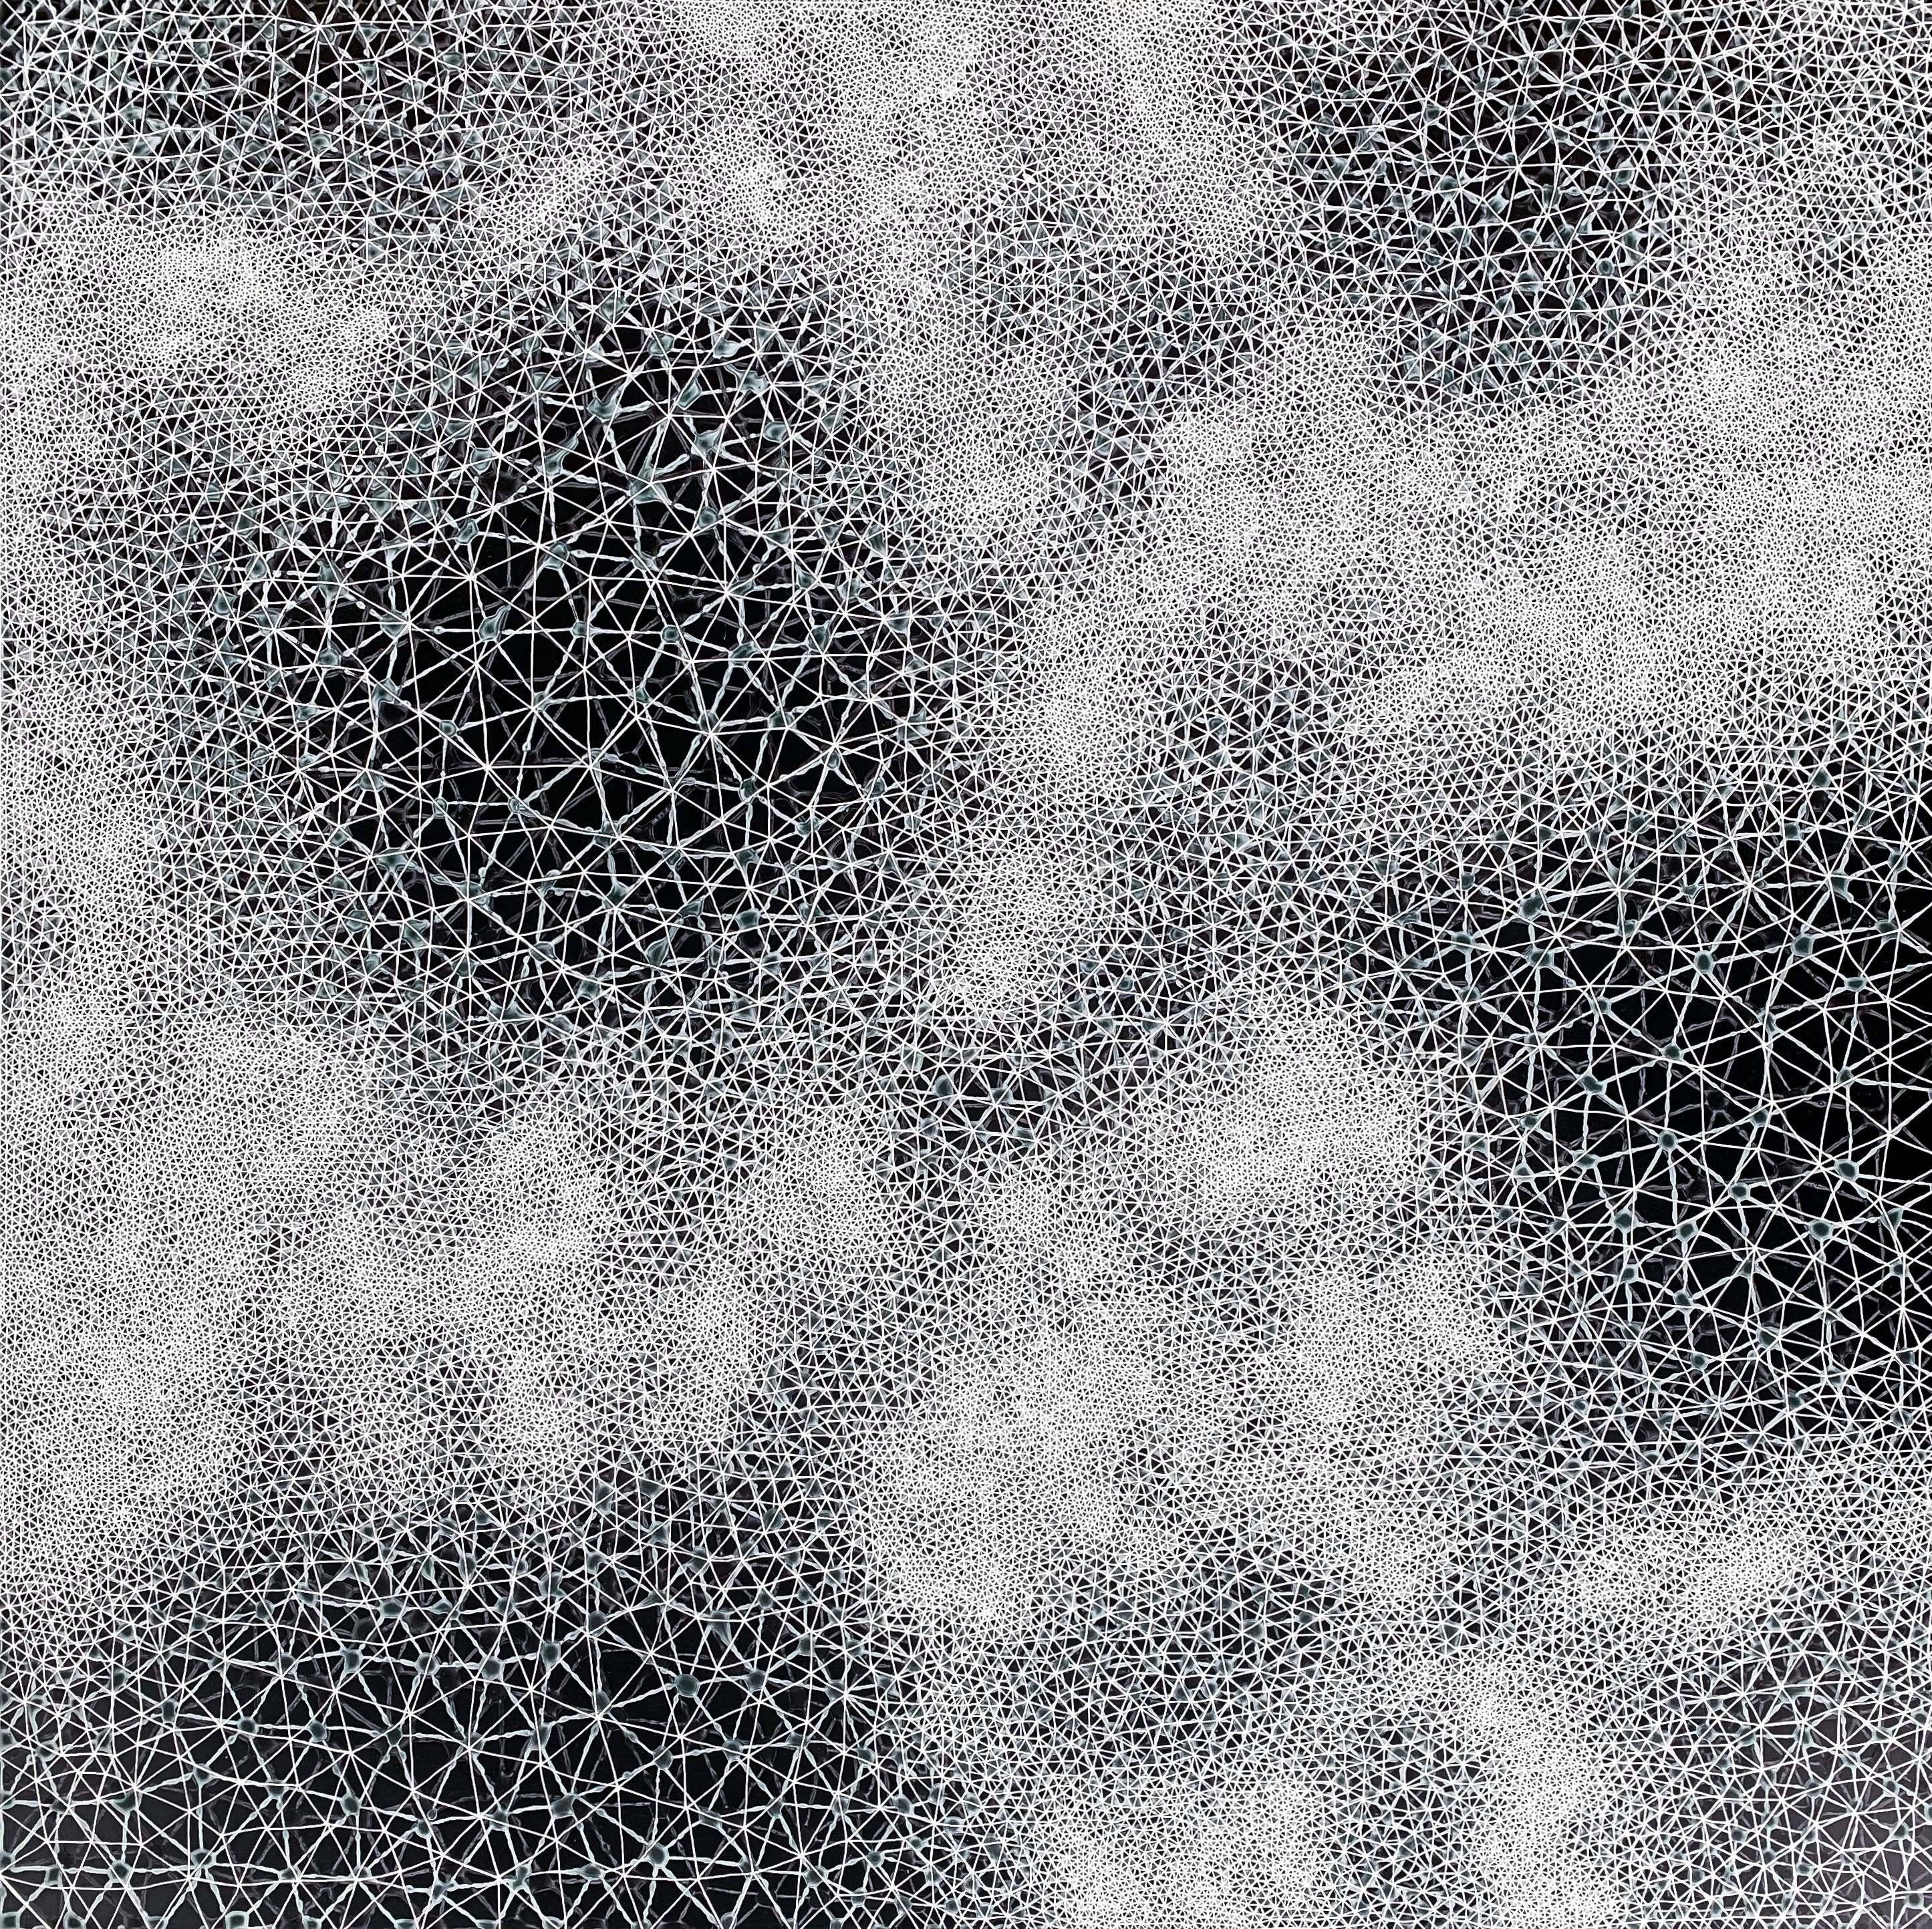 Cohérence - peinture abstraite géométrique diptyque en noir et blanc - Géométrique abstrait Painting par Hadley Radt